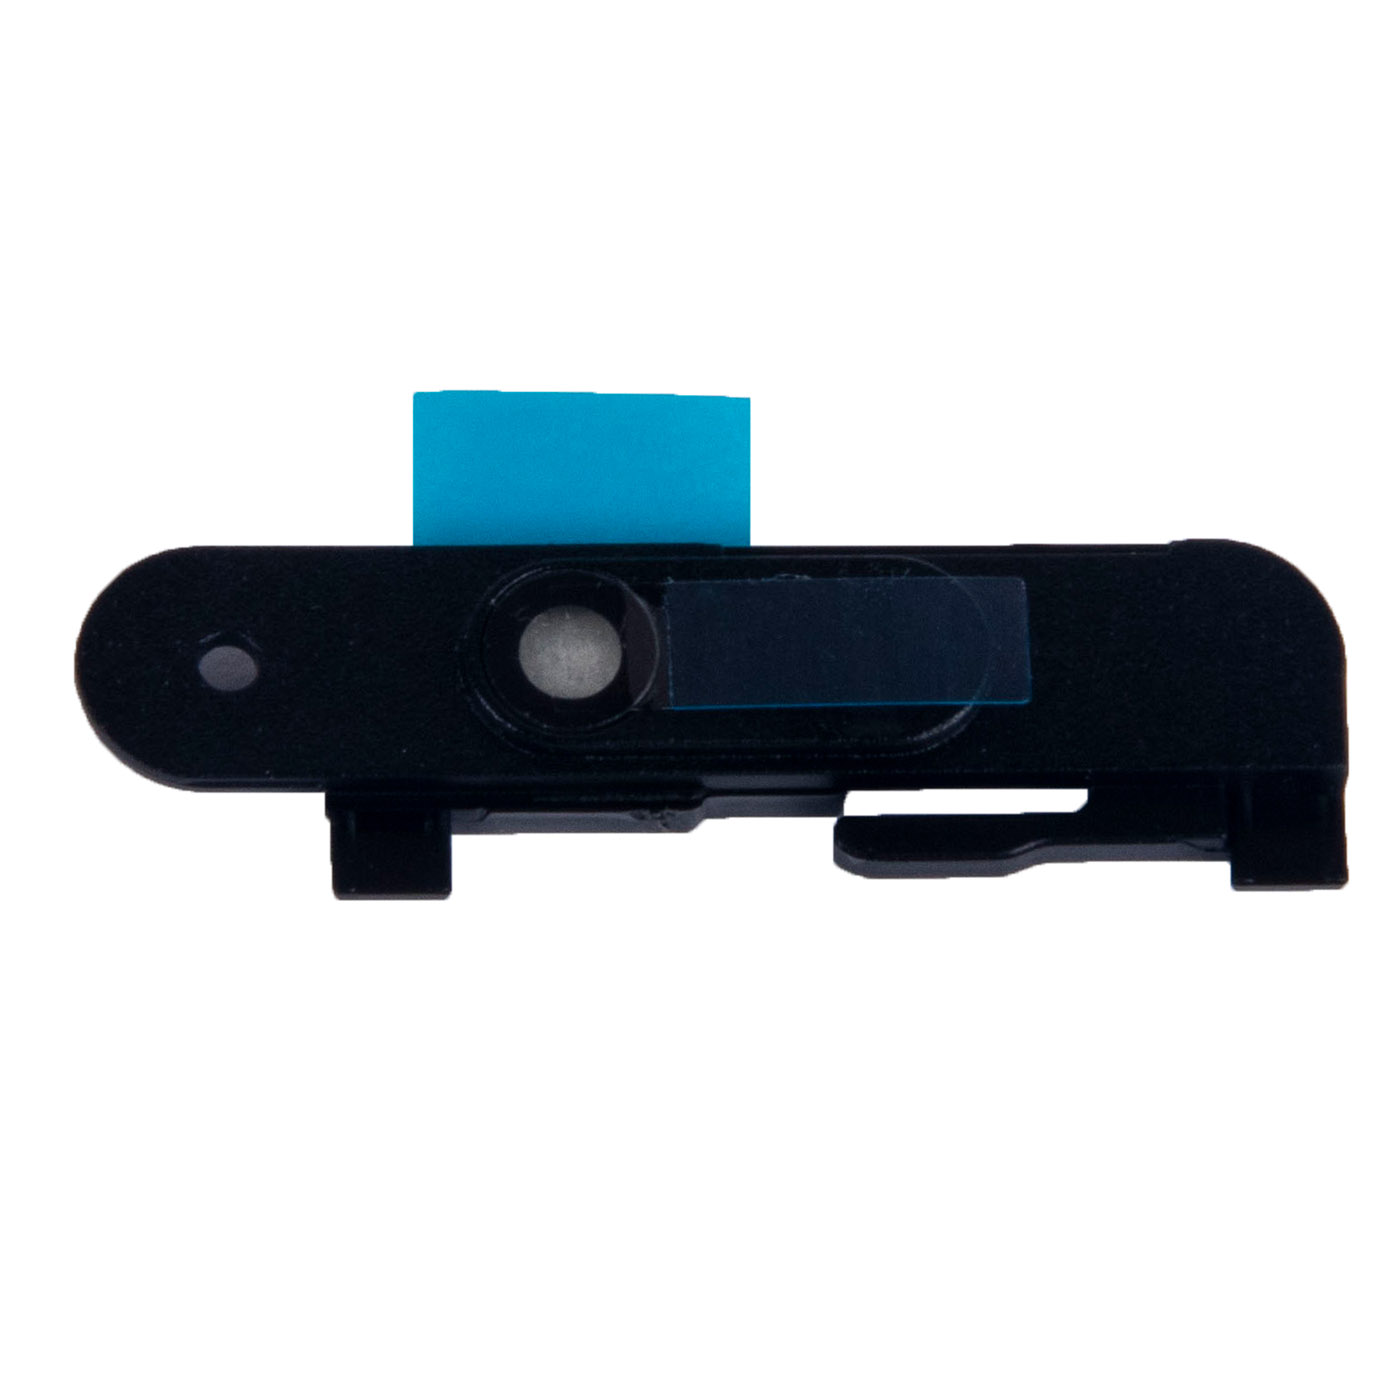 Naklejka kamery webcam Lenovo ThinkPad T480s